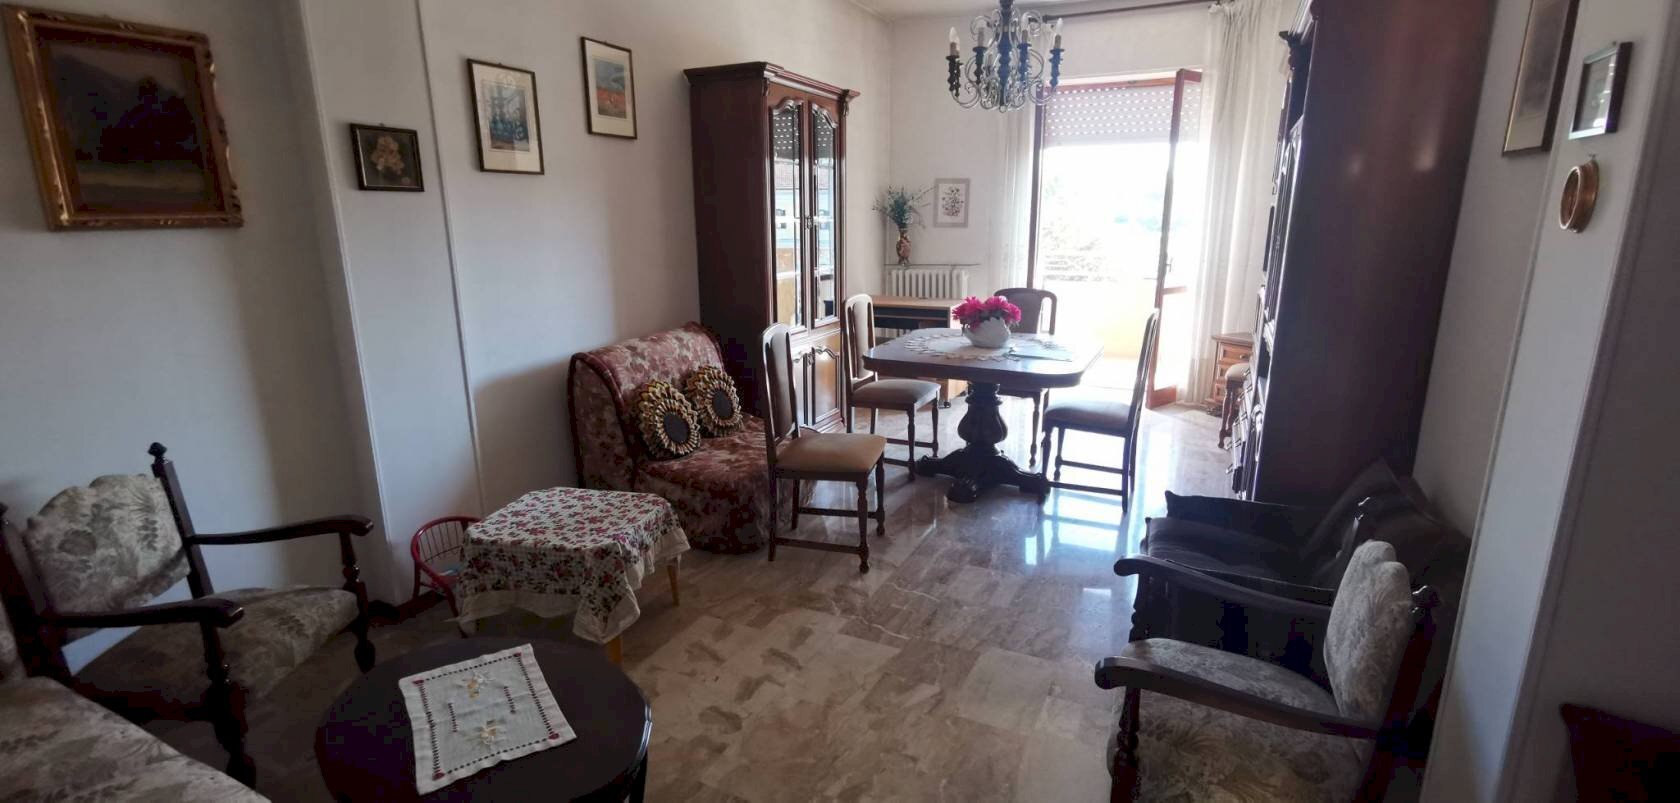 Appartamento in affitto a Montegrosso d'Asti, 1 locali, prezzo € 370 | CambioCasa.it